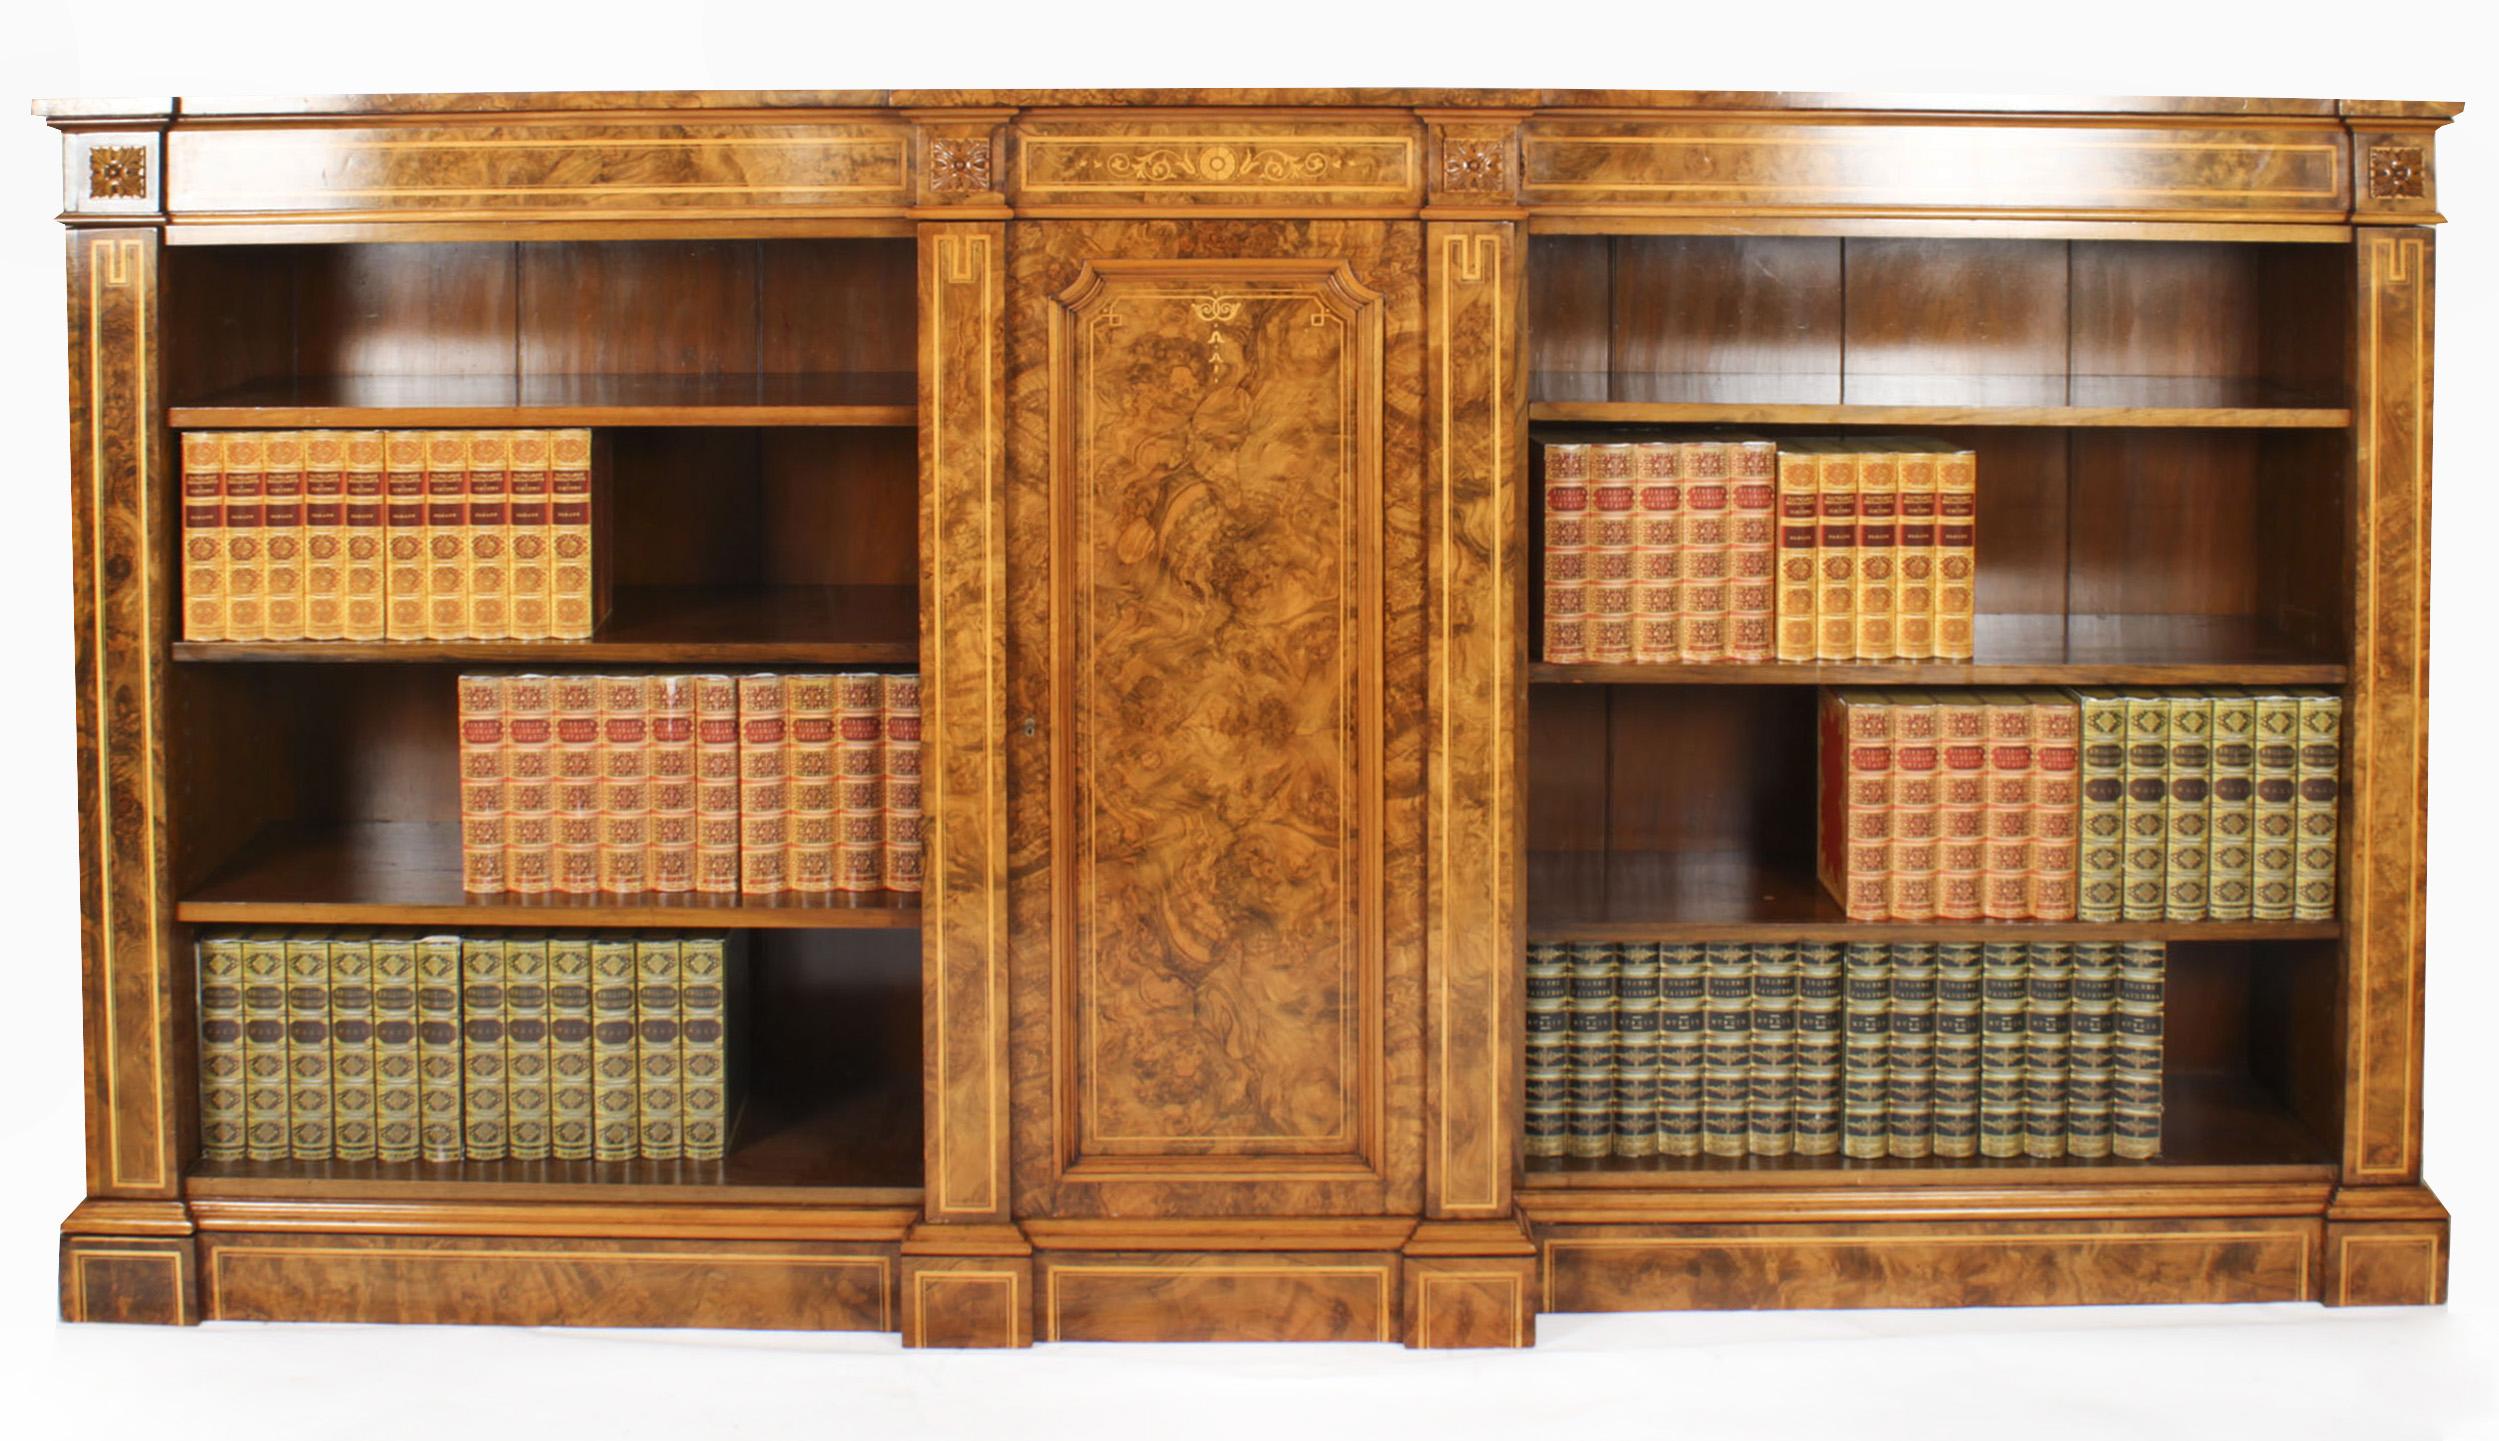 Il s'agit d'une superbe bibliothèque ouverte victorienne ancienne en ronce de noyer et marqueterie, datant d'environ 1860.
 
La bibliothèque présente de magnifiques bandes transversales en bois satiné et quatre plaques d'anthemion sculptées. La